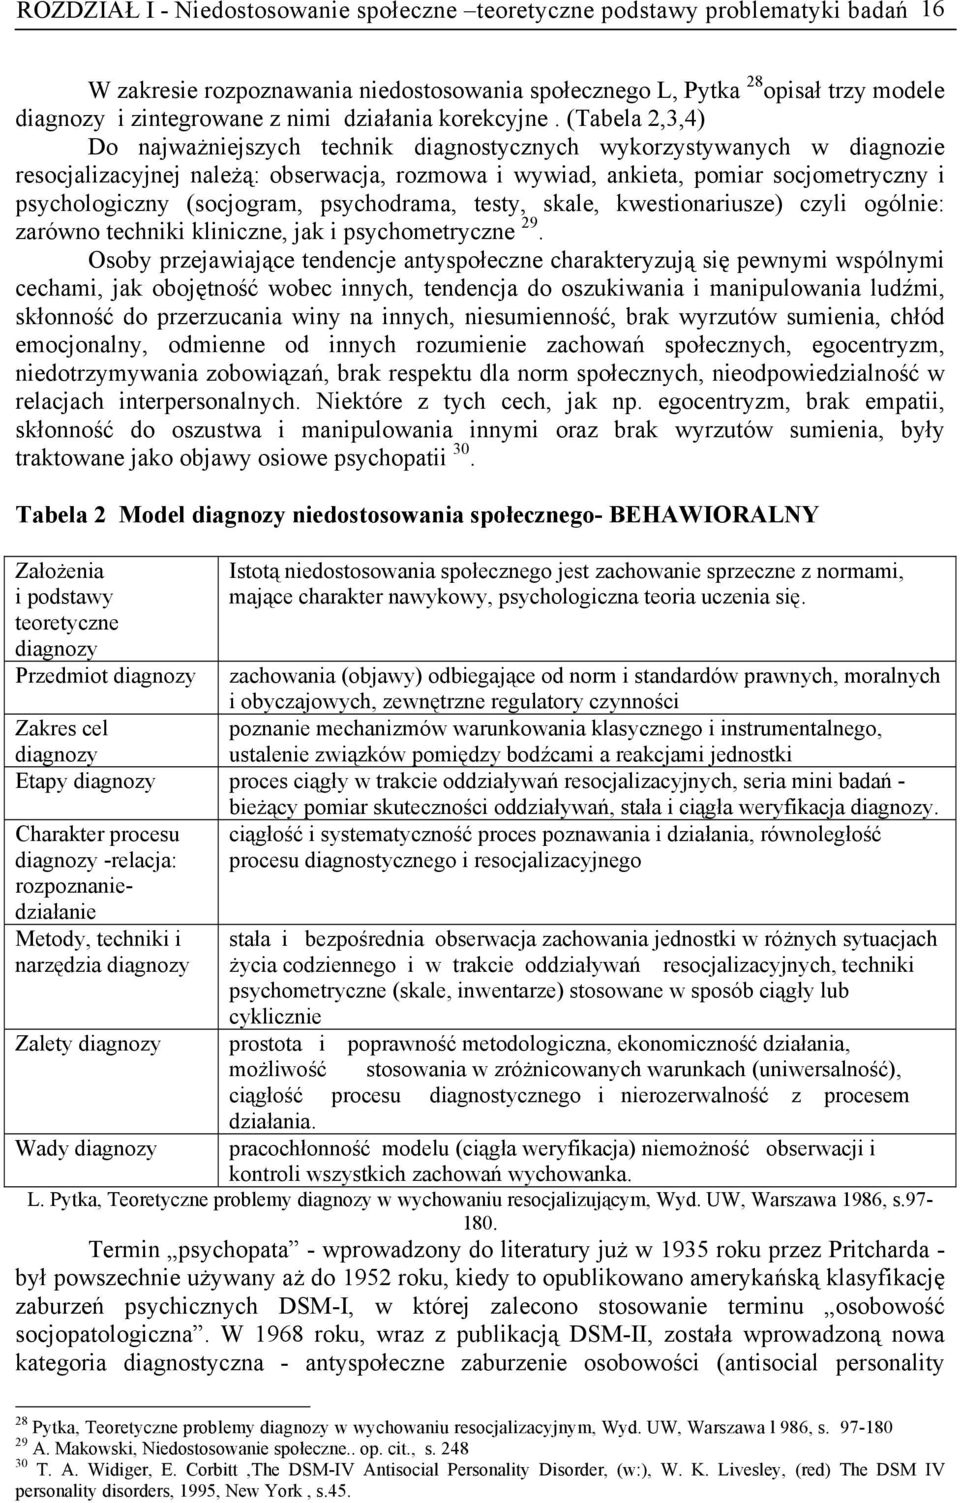 (Tabela 2,3,4) Do najważniejszych technik diagnostycznych wykorzystywanych w diagnozie resocjalizacyjnej należą: obserwacja, rozmowa i wywiad, ankieta, pomiar socjometryczny i psychologiczny